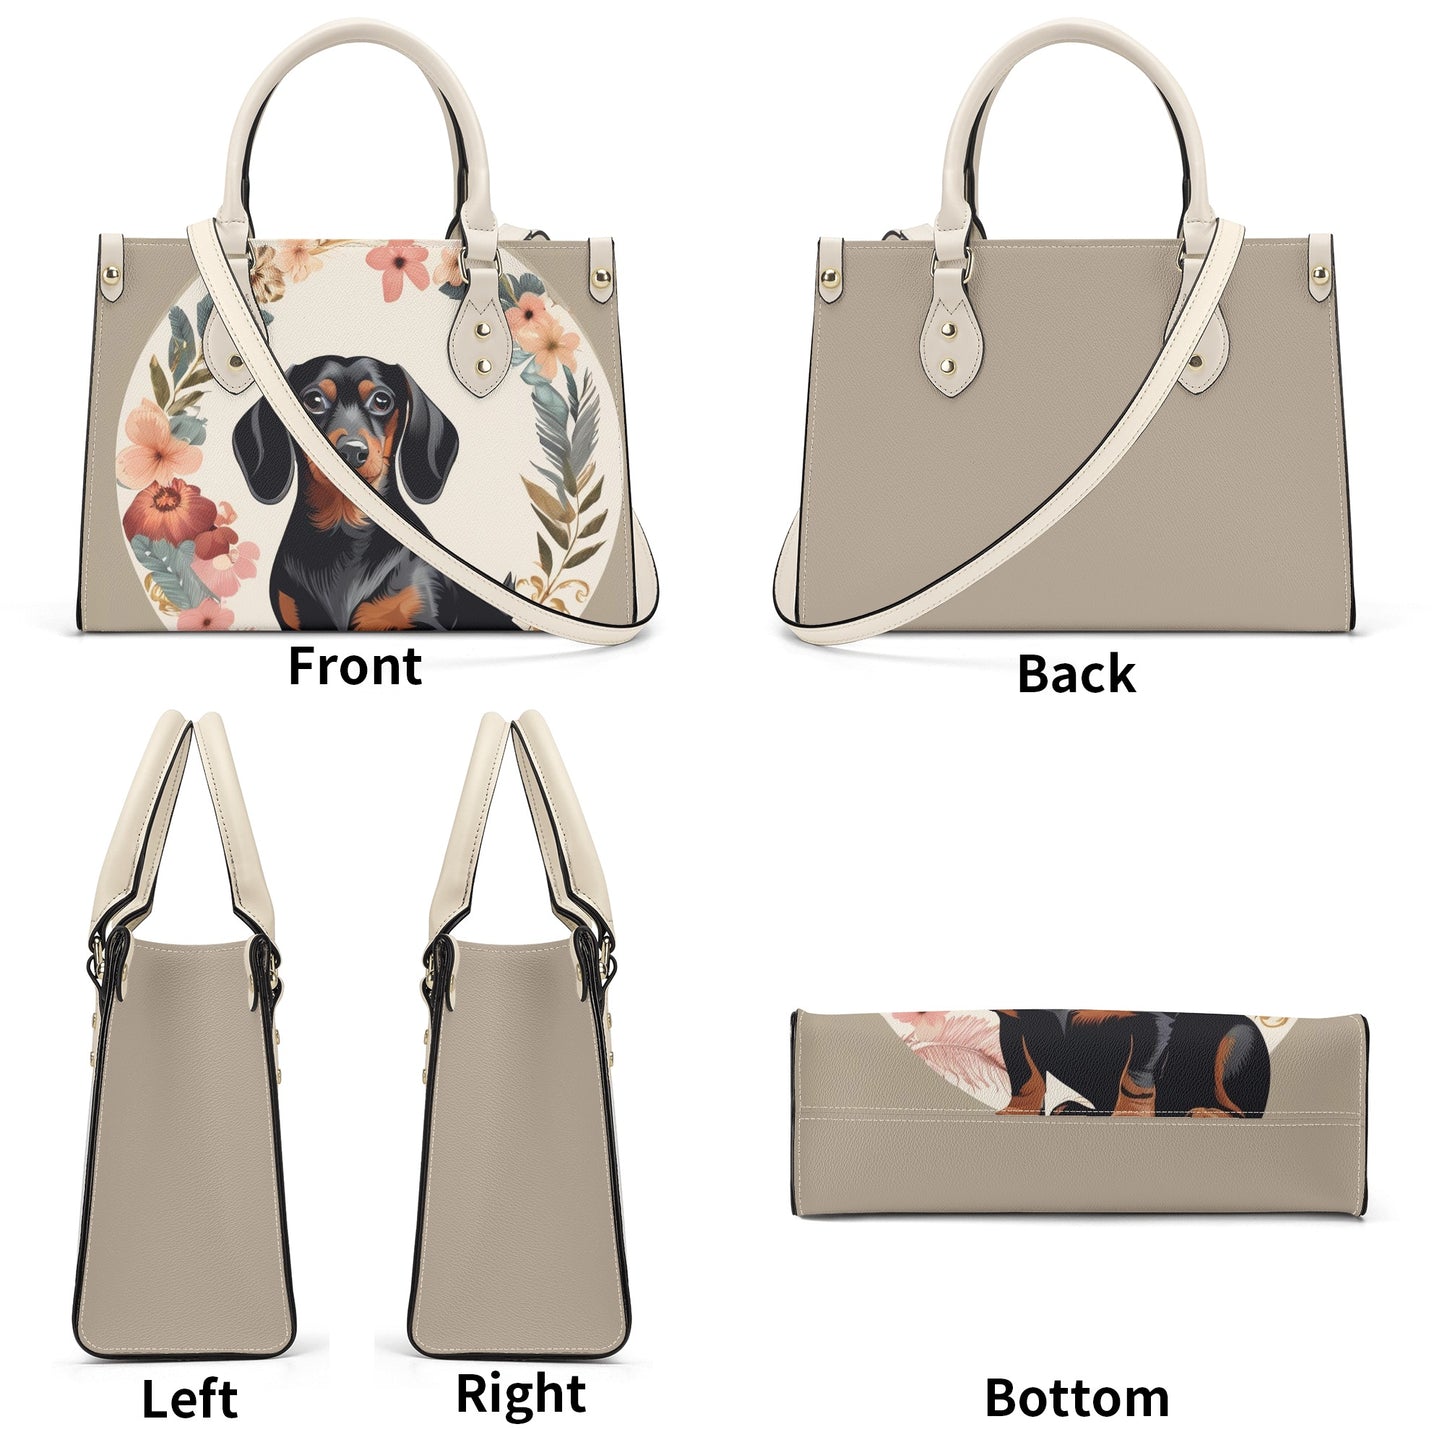 Boris - Luxury Women Handbag